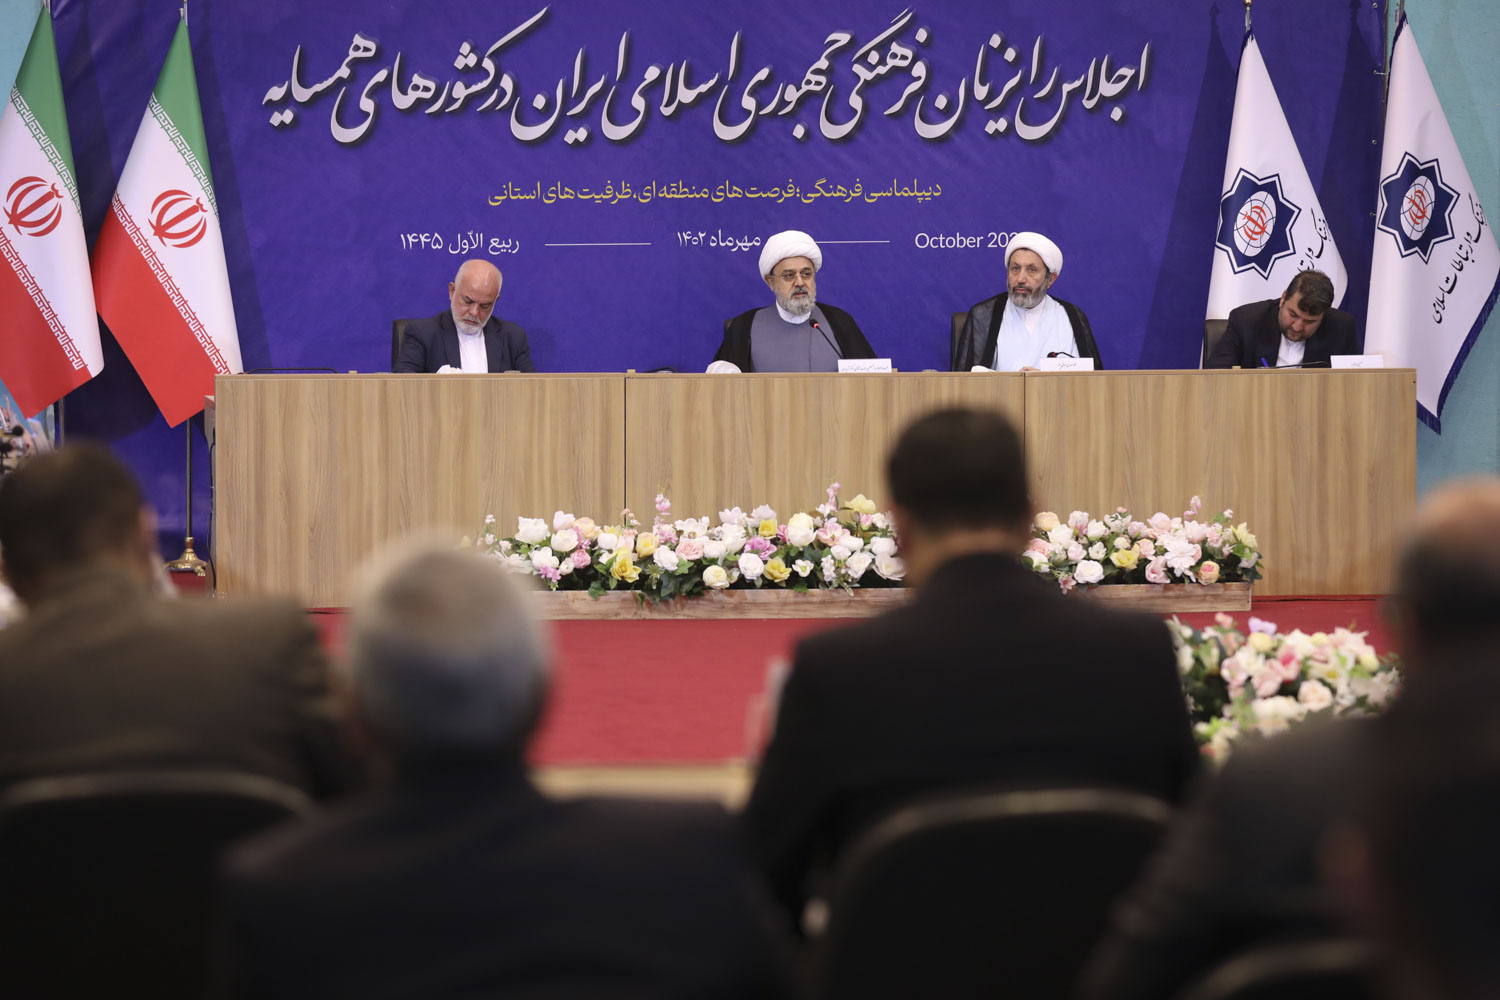 ایران کے ثقافتی مشیروں کے اجلاس میں عالمی مجلس تقریب کے سیکرٹری جنرل کی شرکت  